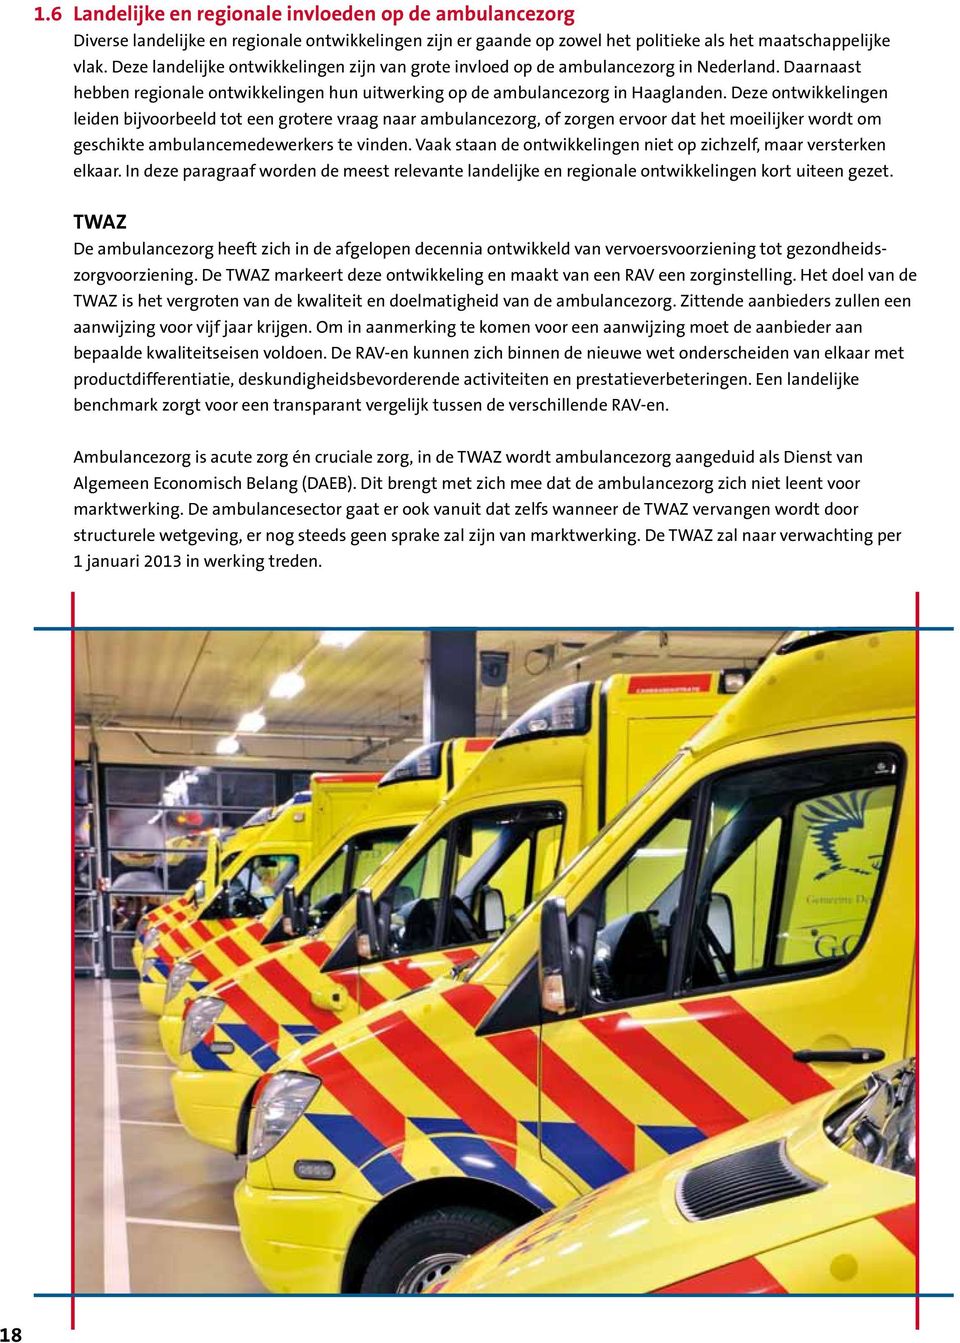 Deze ontwikkelingen leiden bijvoorbeeld tot een grotere vraag naar ambulancezorg, of zorgen ervoor dat het moeilijker wordt om geschikte ambulancemedewerkers te vinden.